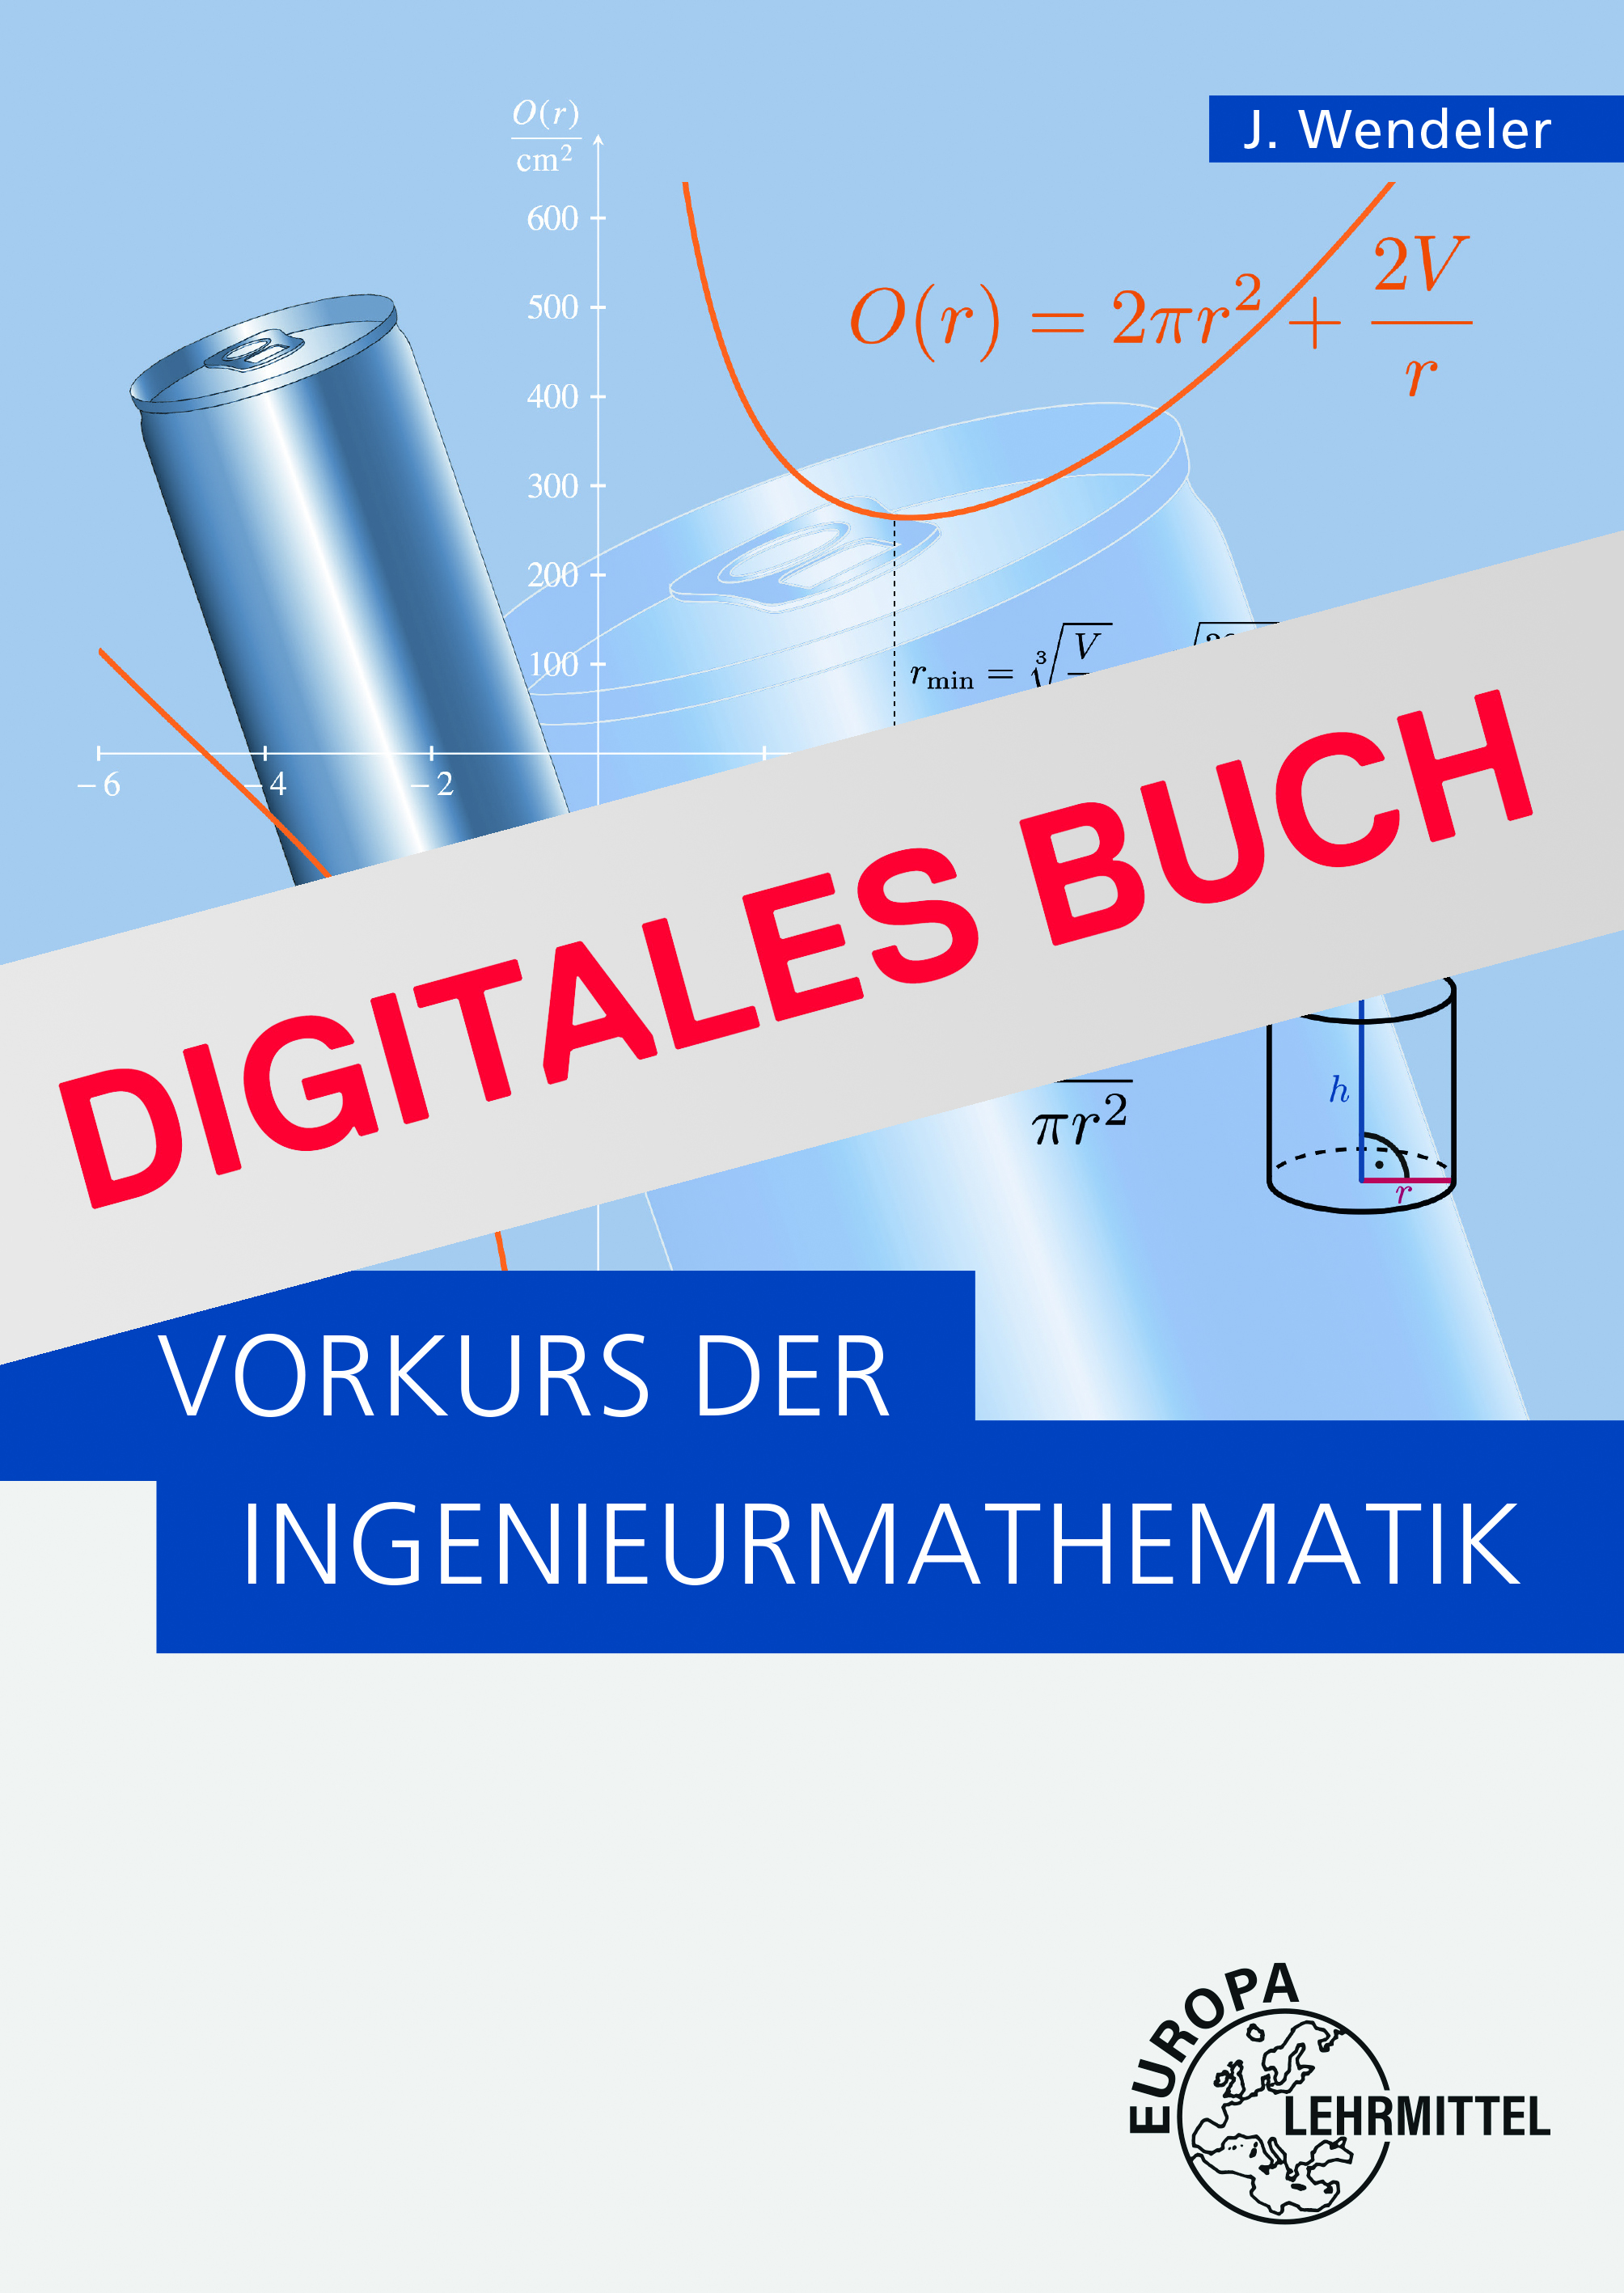 Vorkurs der Ingenieurmathematik (Wendeler) - Digitales Buch